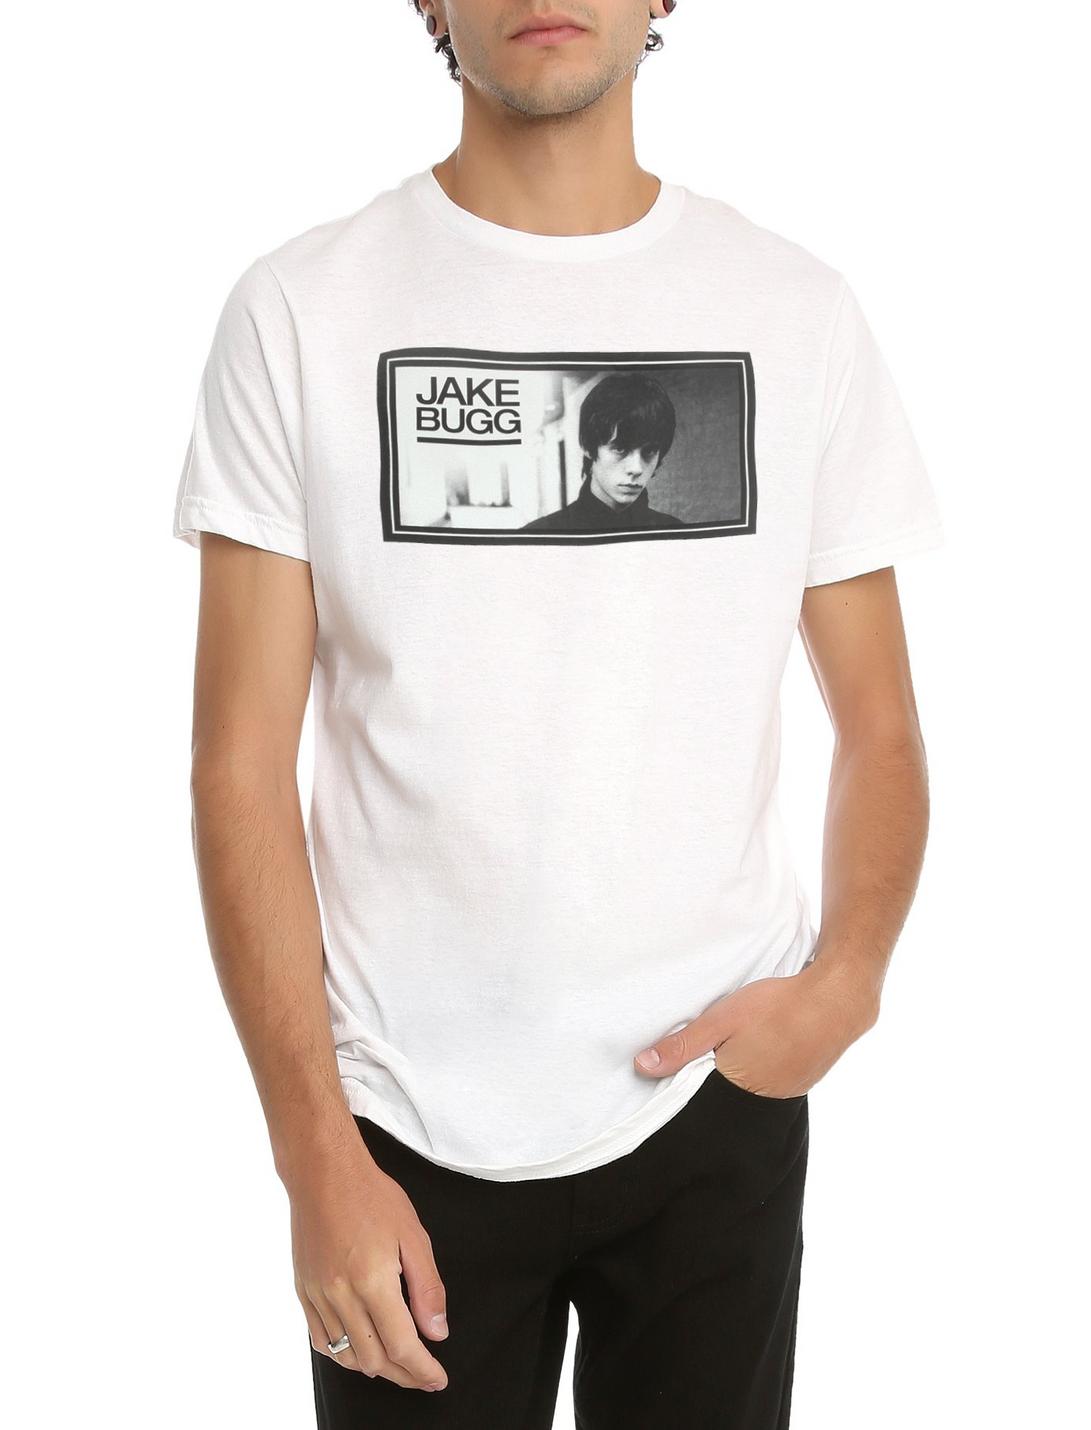 Jake Bugg Turtleneck T-Shirt, WHITE, hi-res